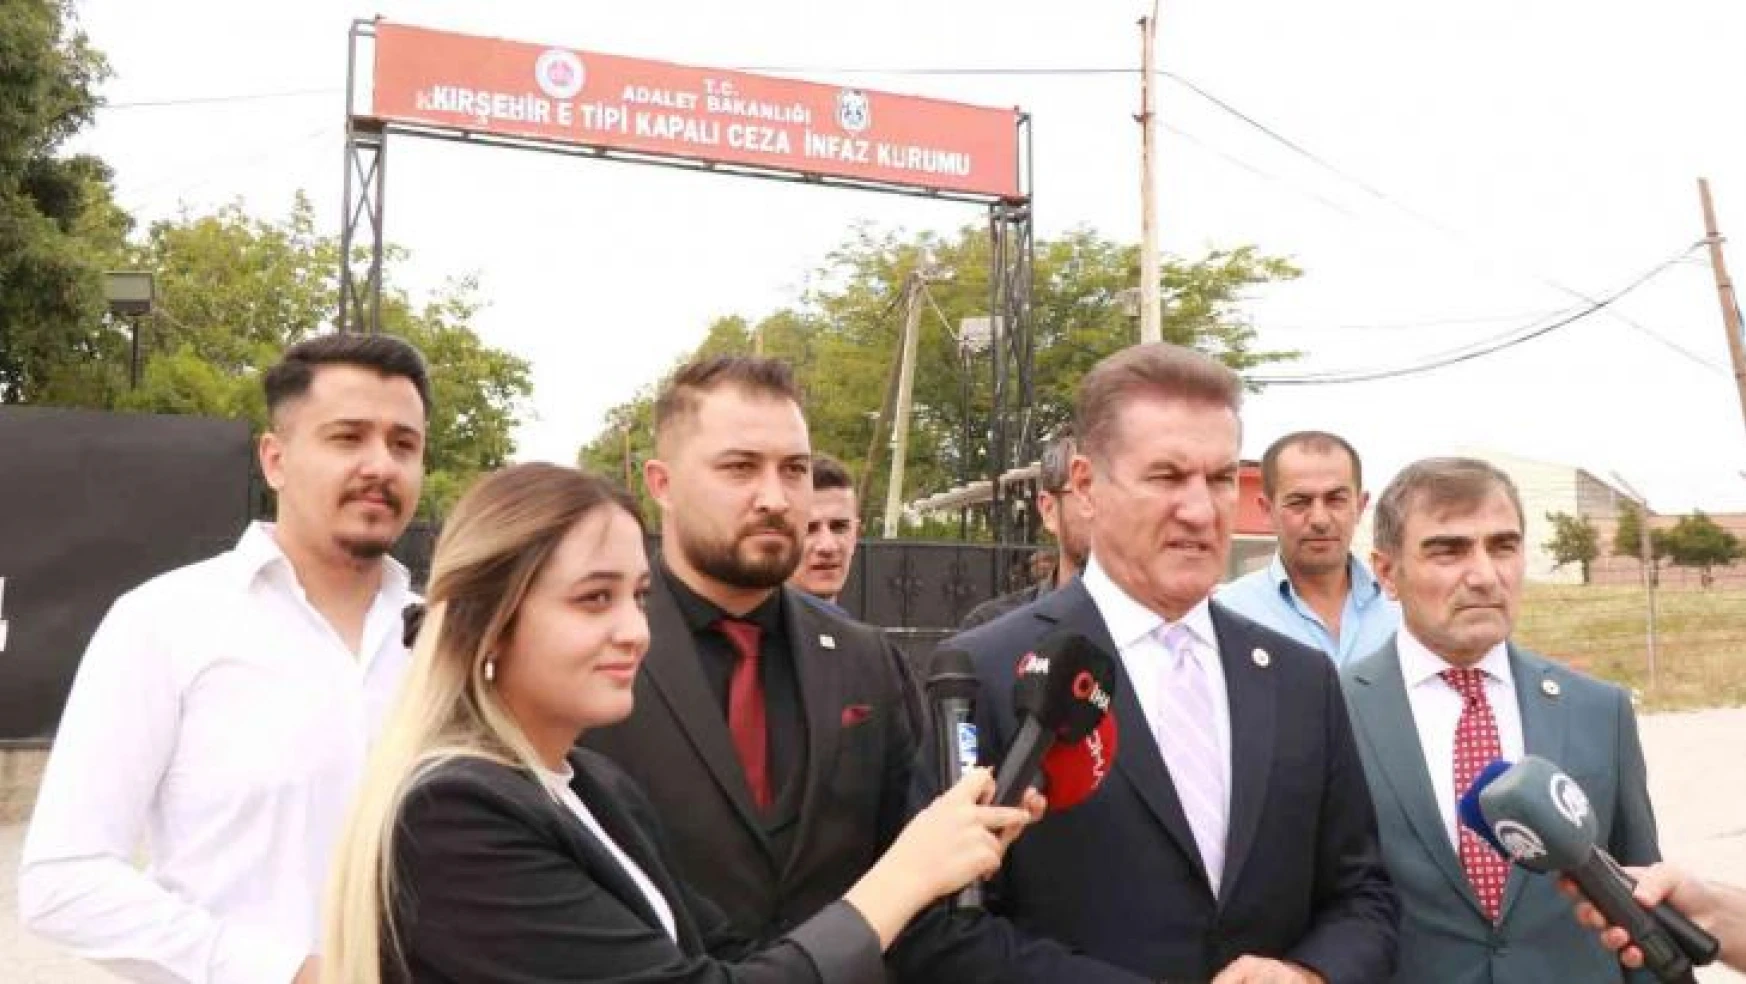 Sarıgül, Kırşehir E-Tipi Cezaevi önünde af çağrısını yineledi